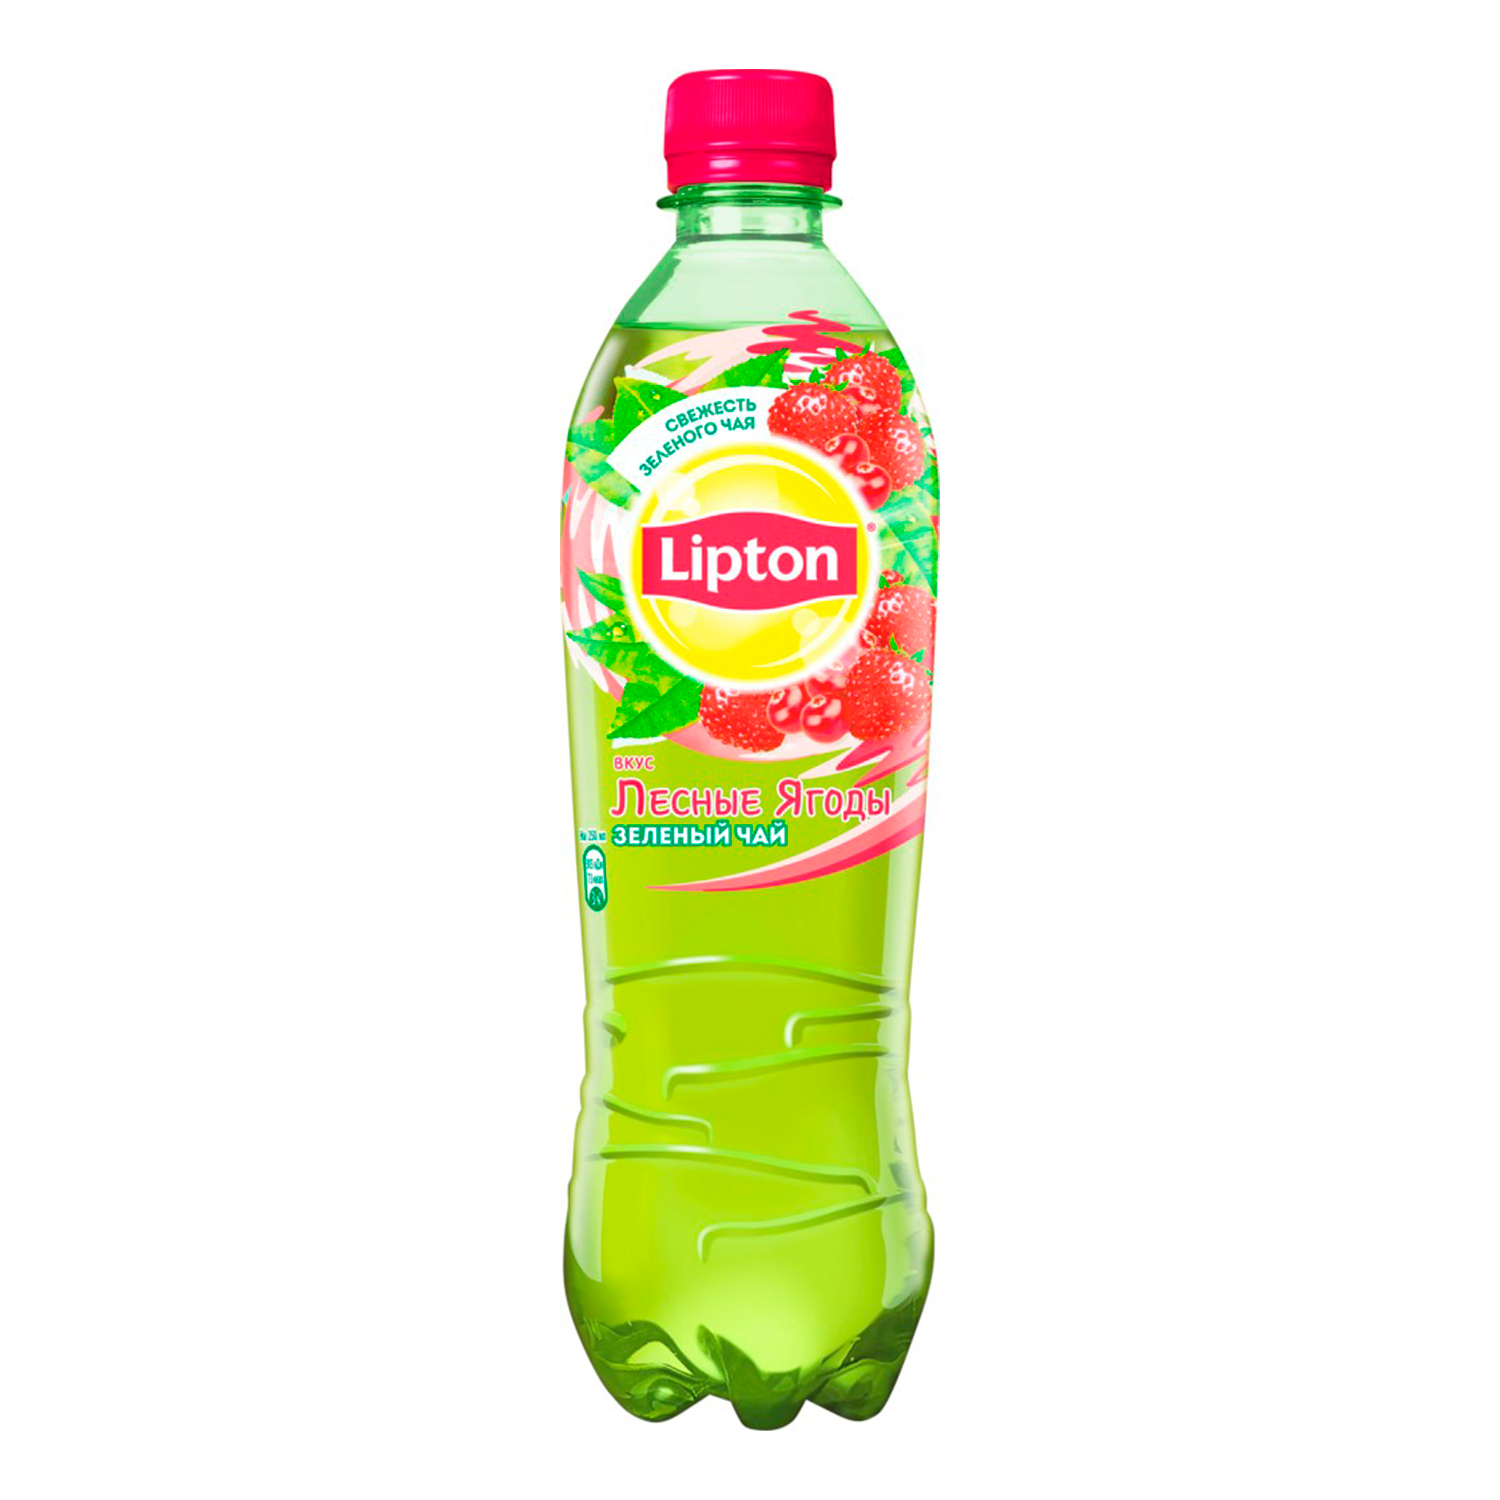 Липтон 1 литр. Чай Липтон земляника-клюква 0,5л. Липтон-холодный чай, земляника, клюква-1, 5.. Липтон зелёный клюква-земляника 0.5л. Липтон зеленый чай Лесные ягоды.